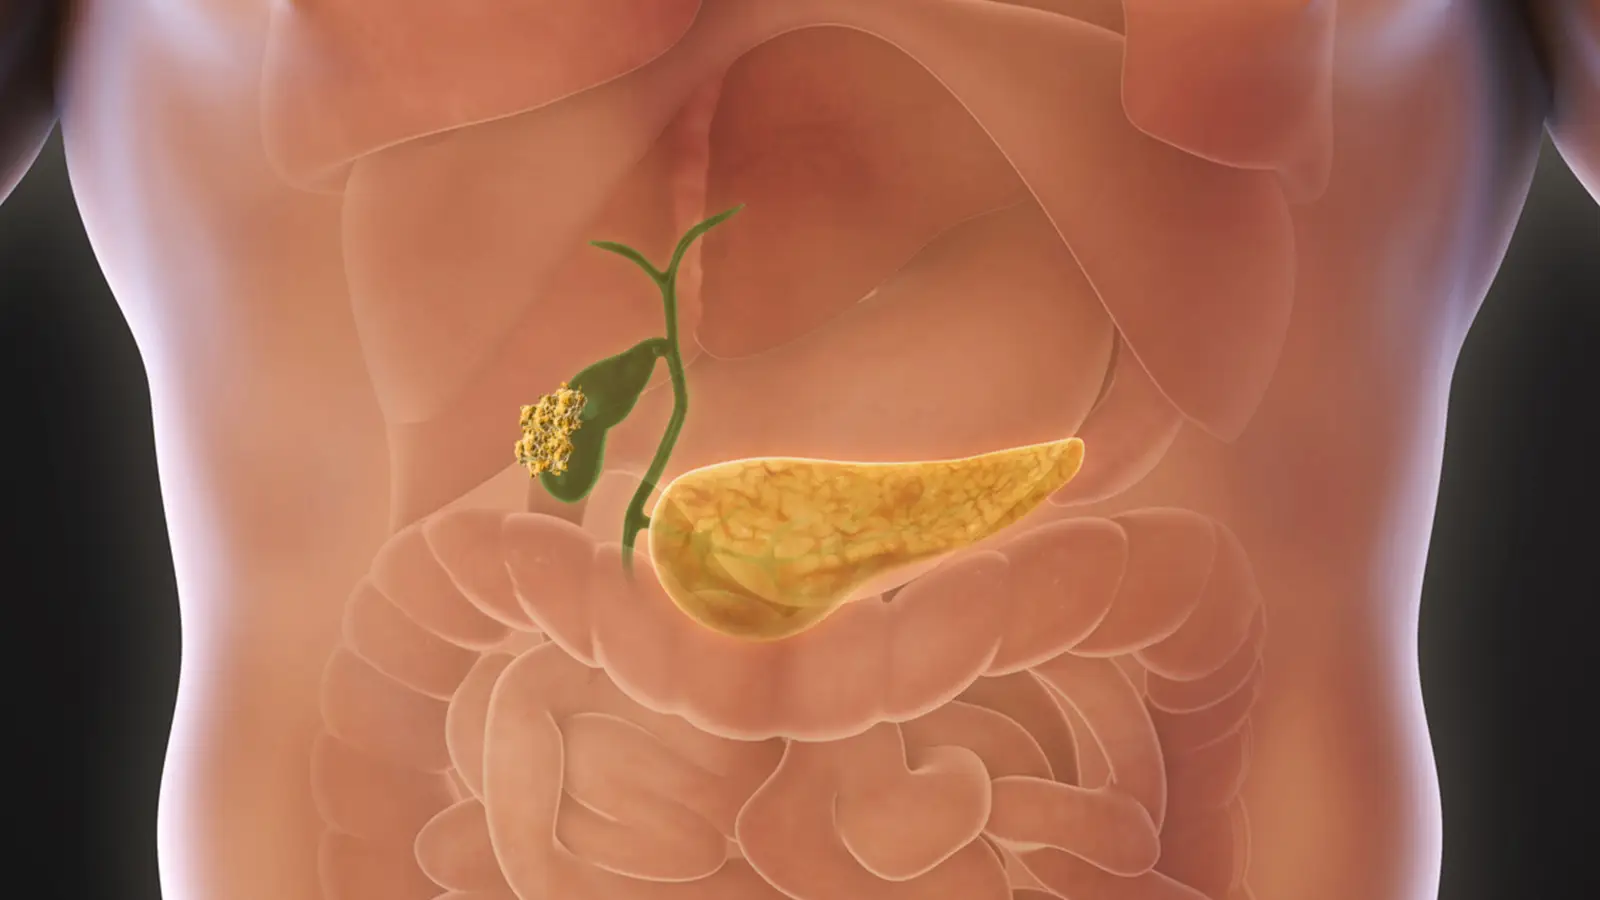 Image of gallbladder cancer